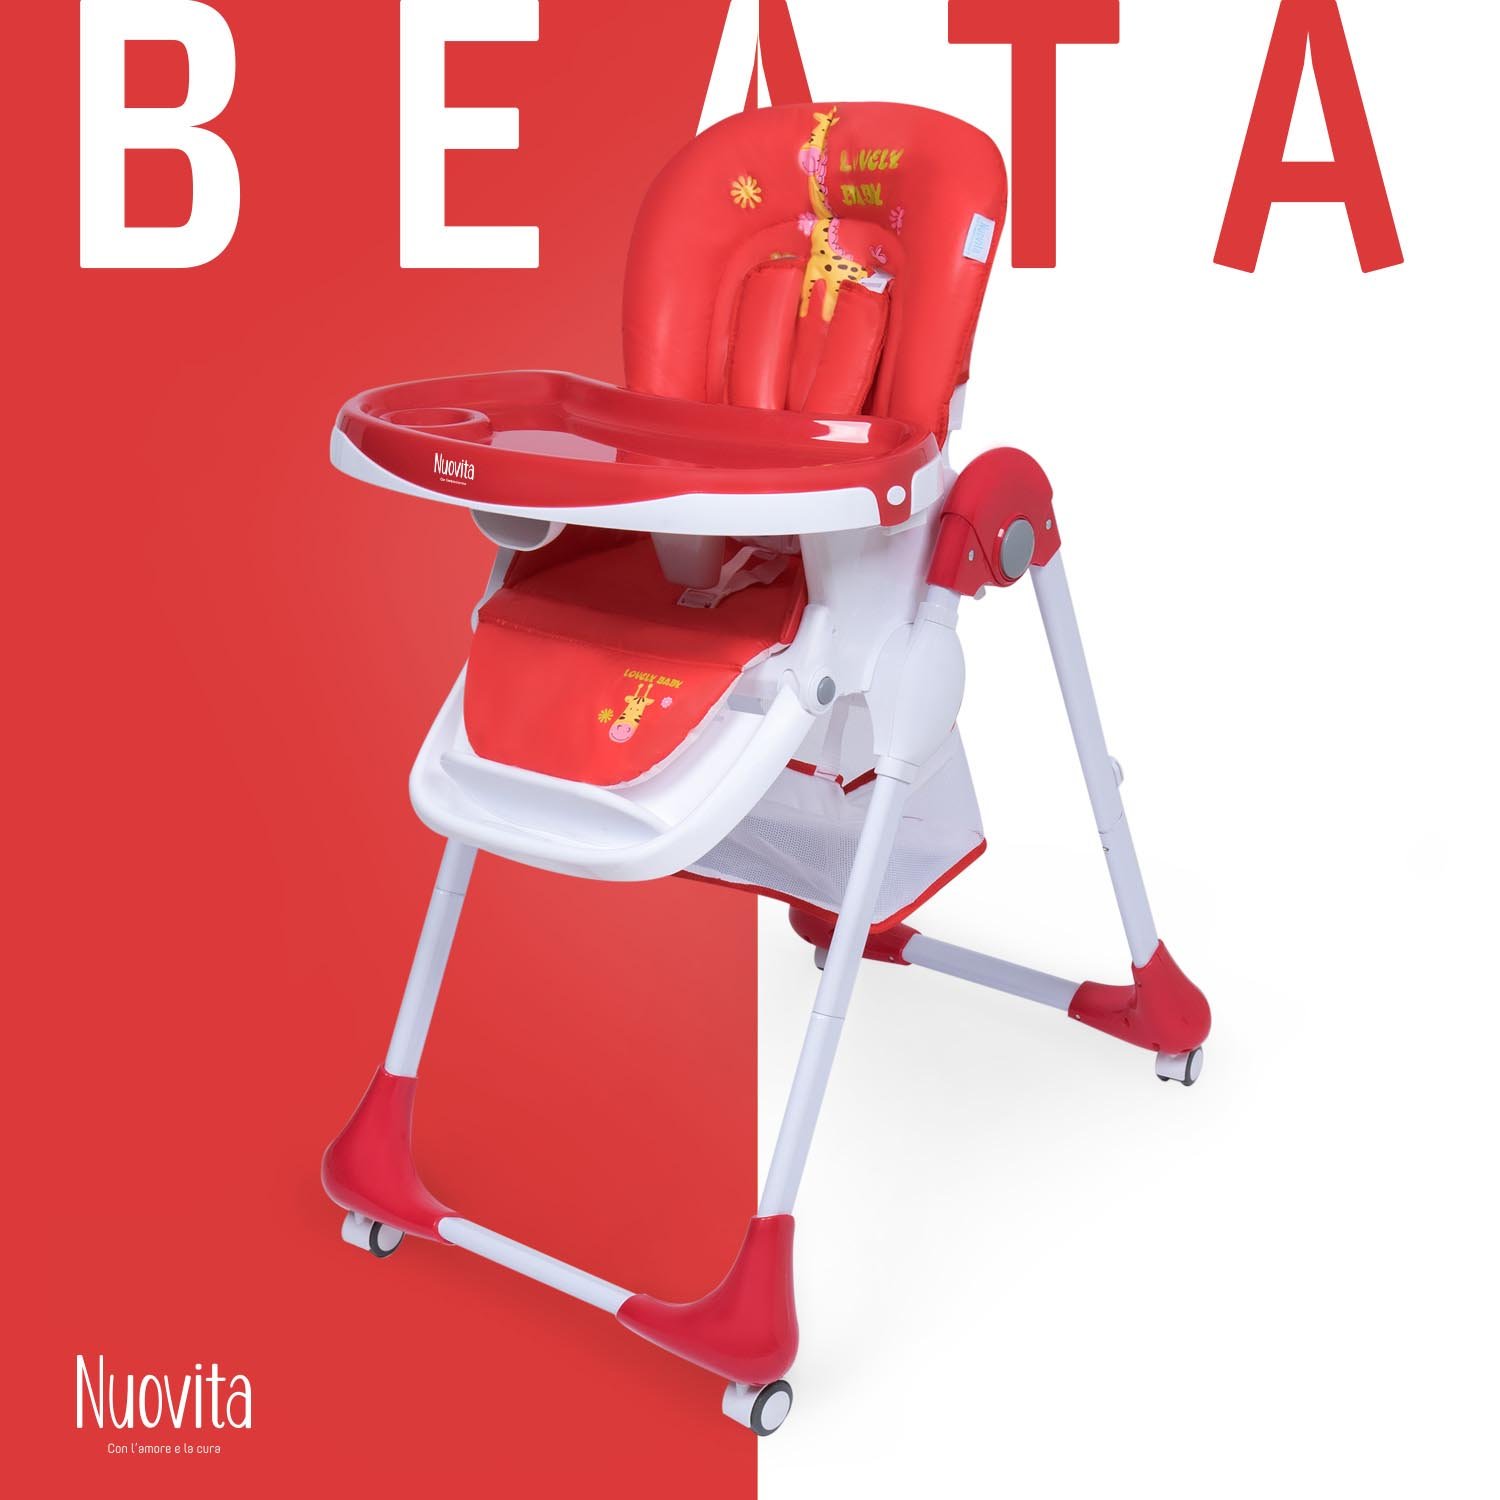 Стульчик для кормления Nuovita Beata ( Savana rosso) стульчик для кормления inglesina fast красный ay90g5red